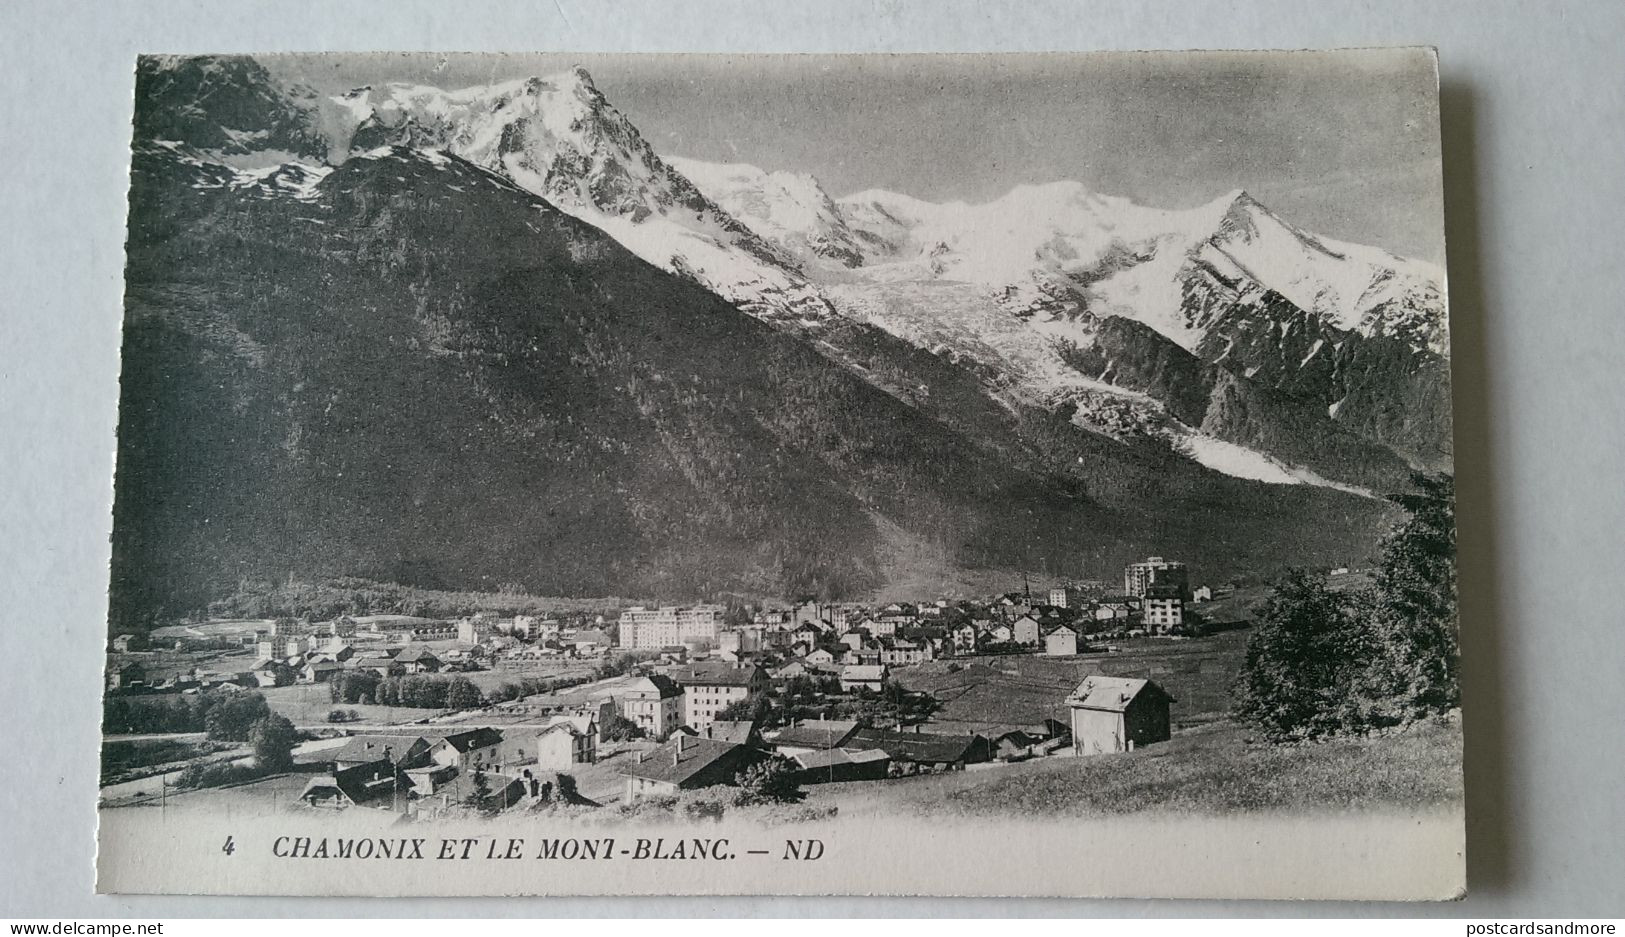 France Chamonix Mont Blanc Lot of 40 unused postcards Lévy et Neurdein Réunis ca. 1925